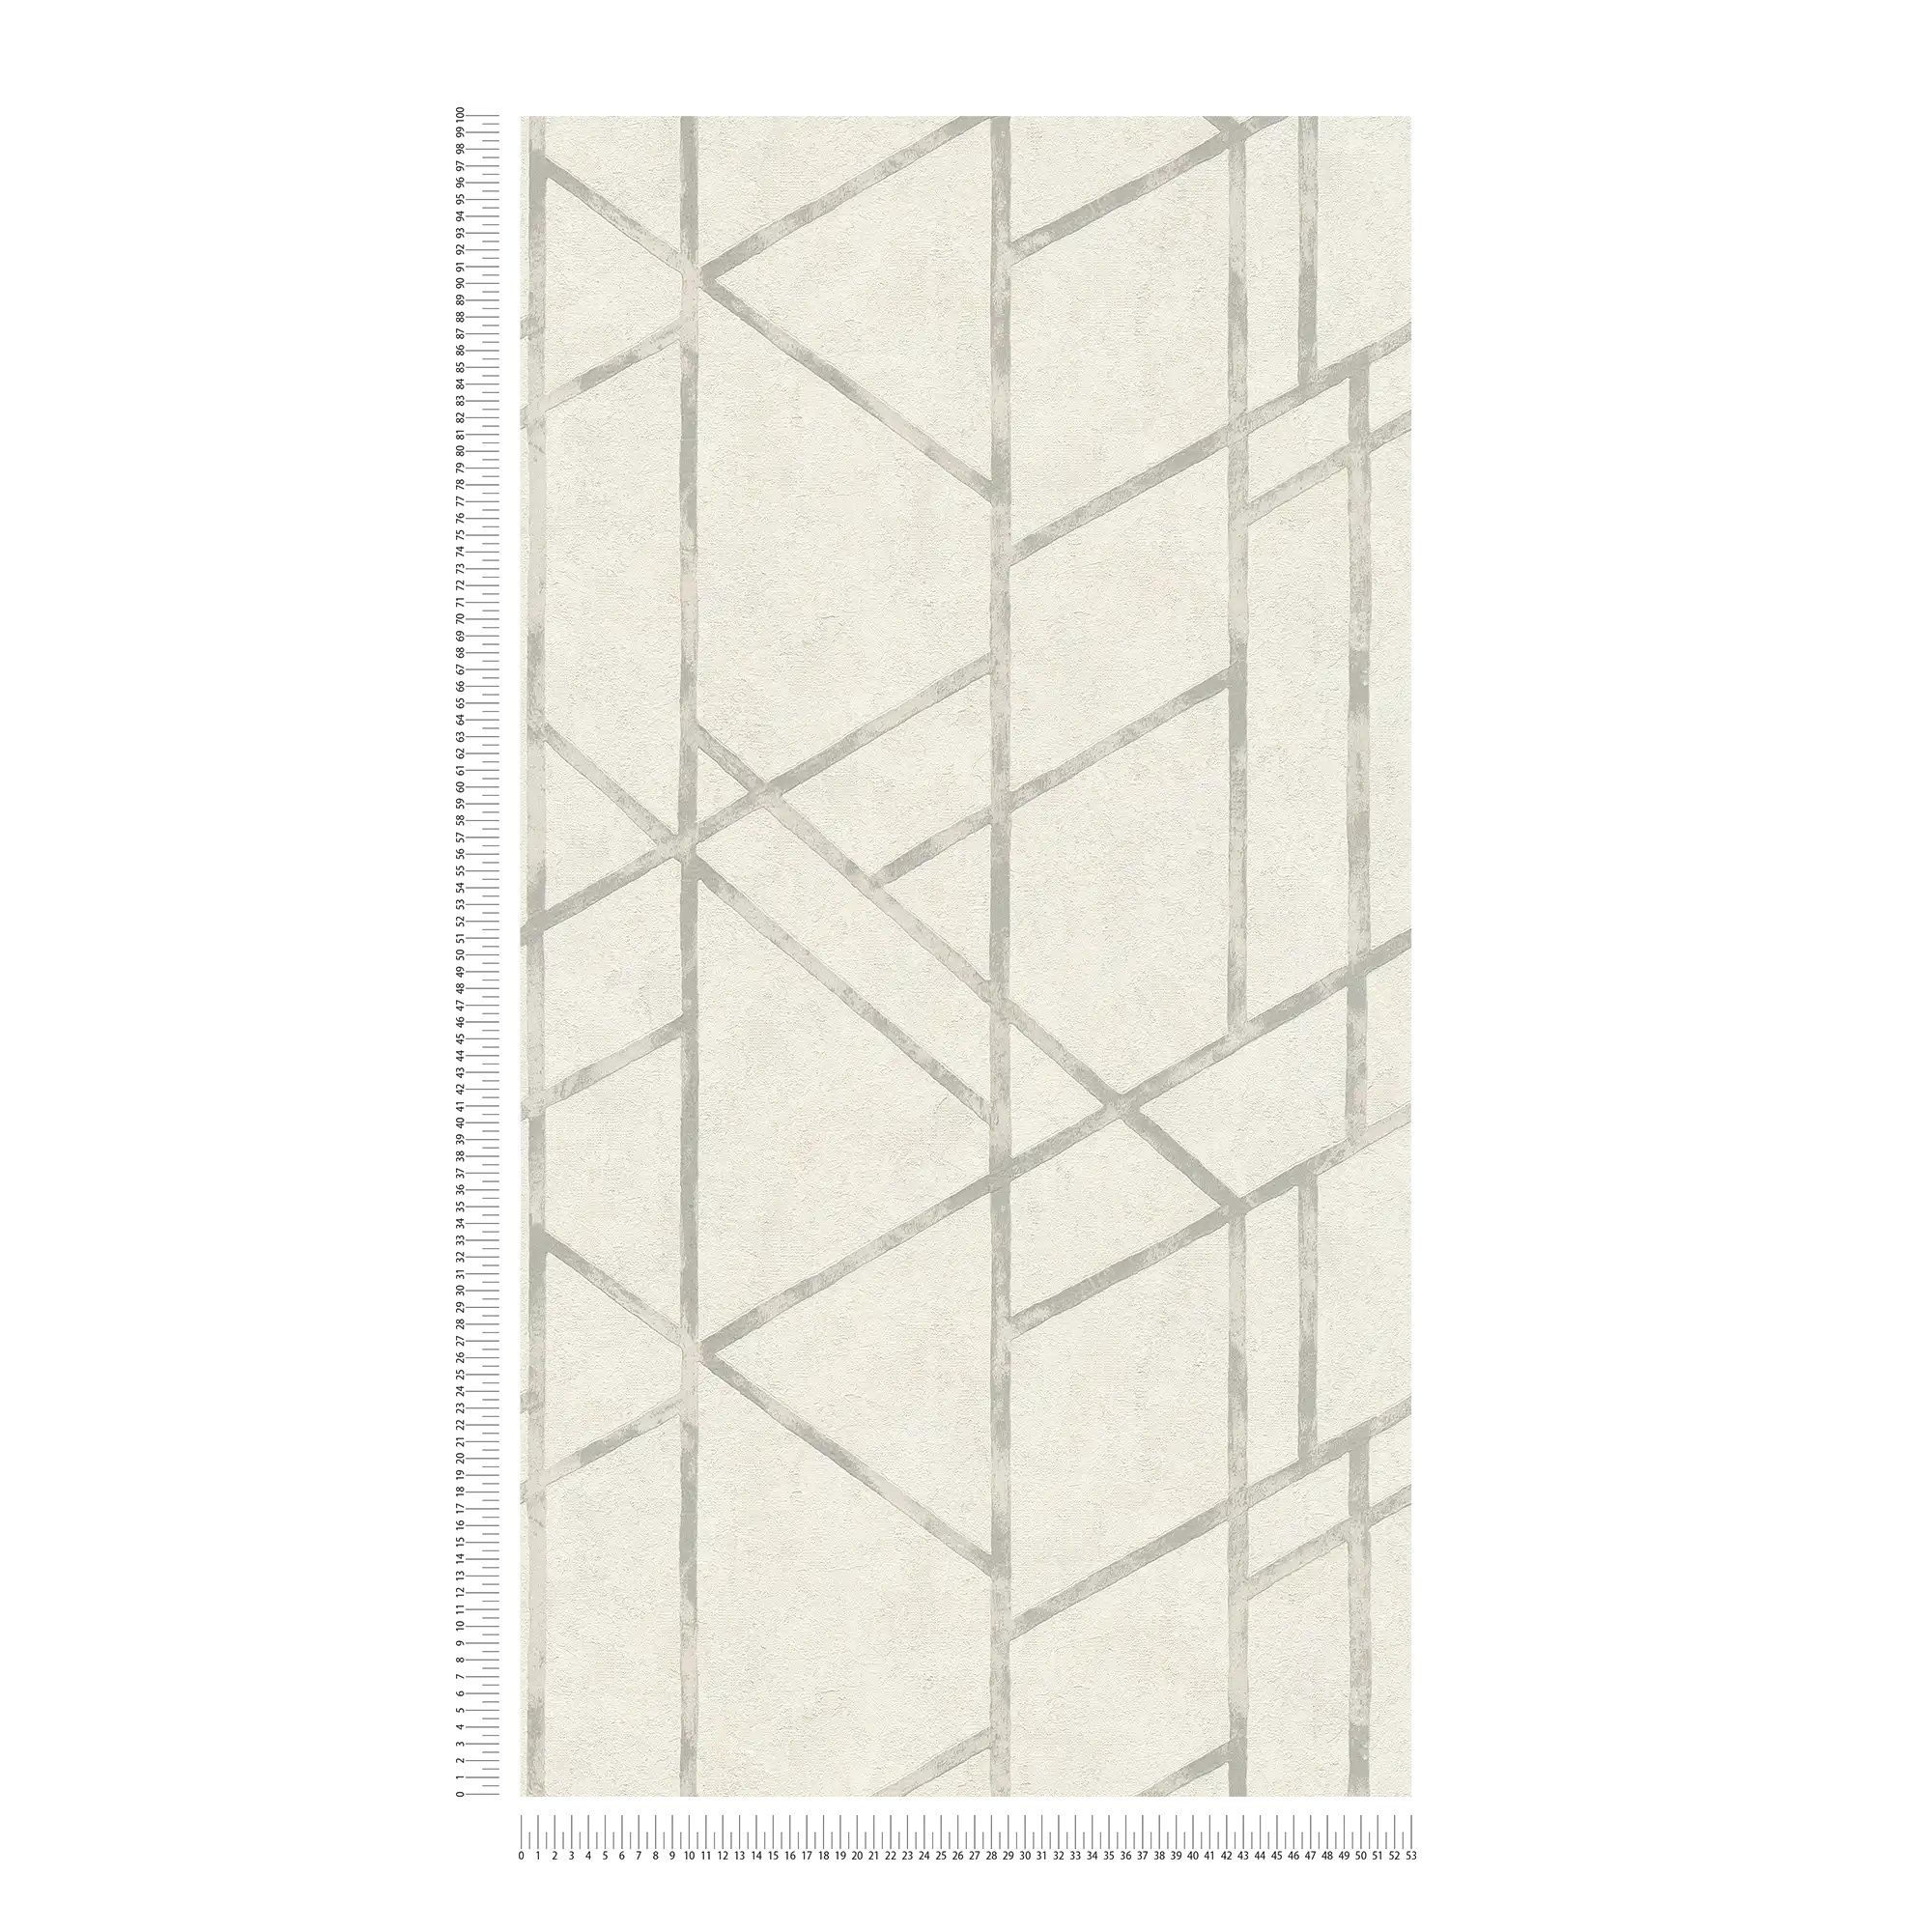             Papel pintado de hormigón con patrón gráfico plateado - plata, blanco
        